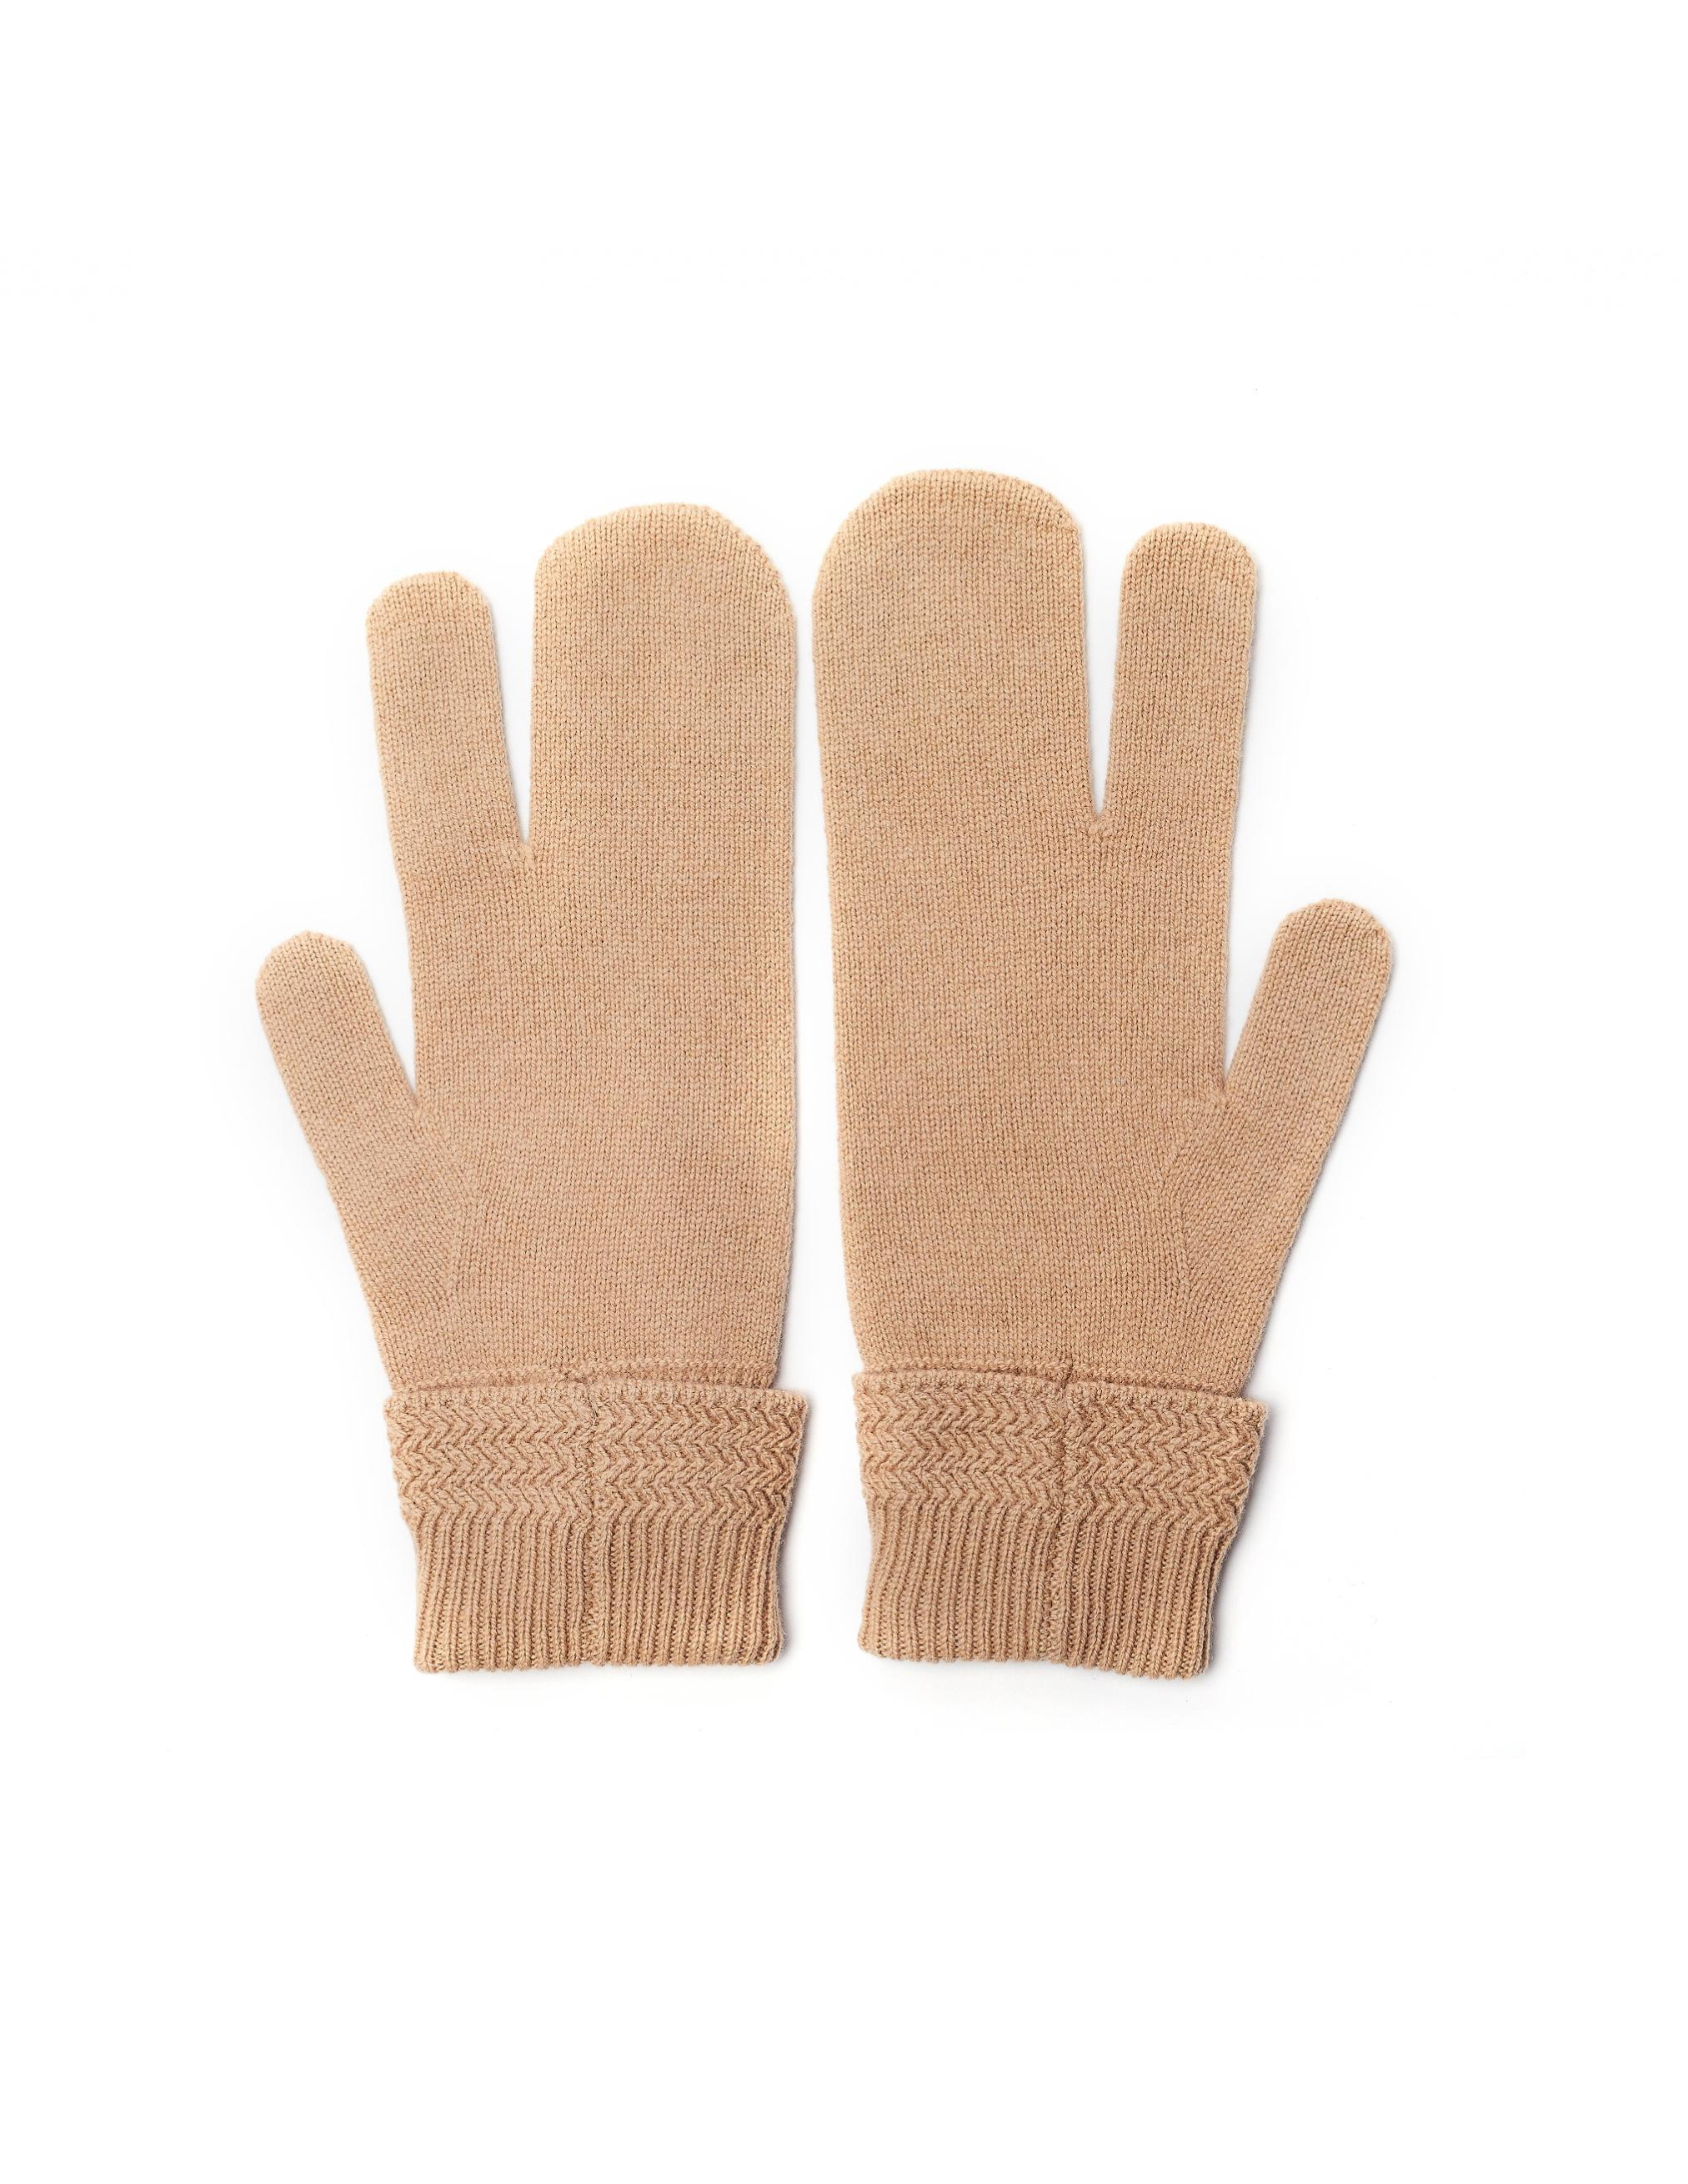 Бежевые перчатки из шерсти и кашемира Maison Margiela S50TS0007/S16825/cml, размер M;L S50TS0007/S16825/cml - фото 3